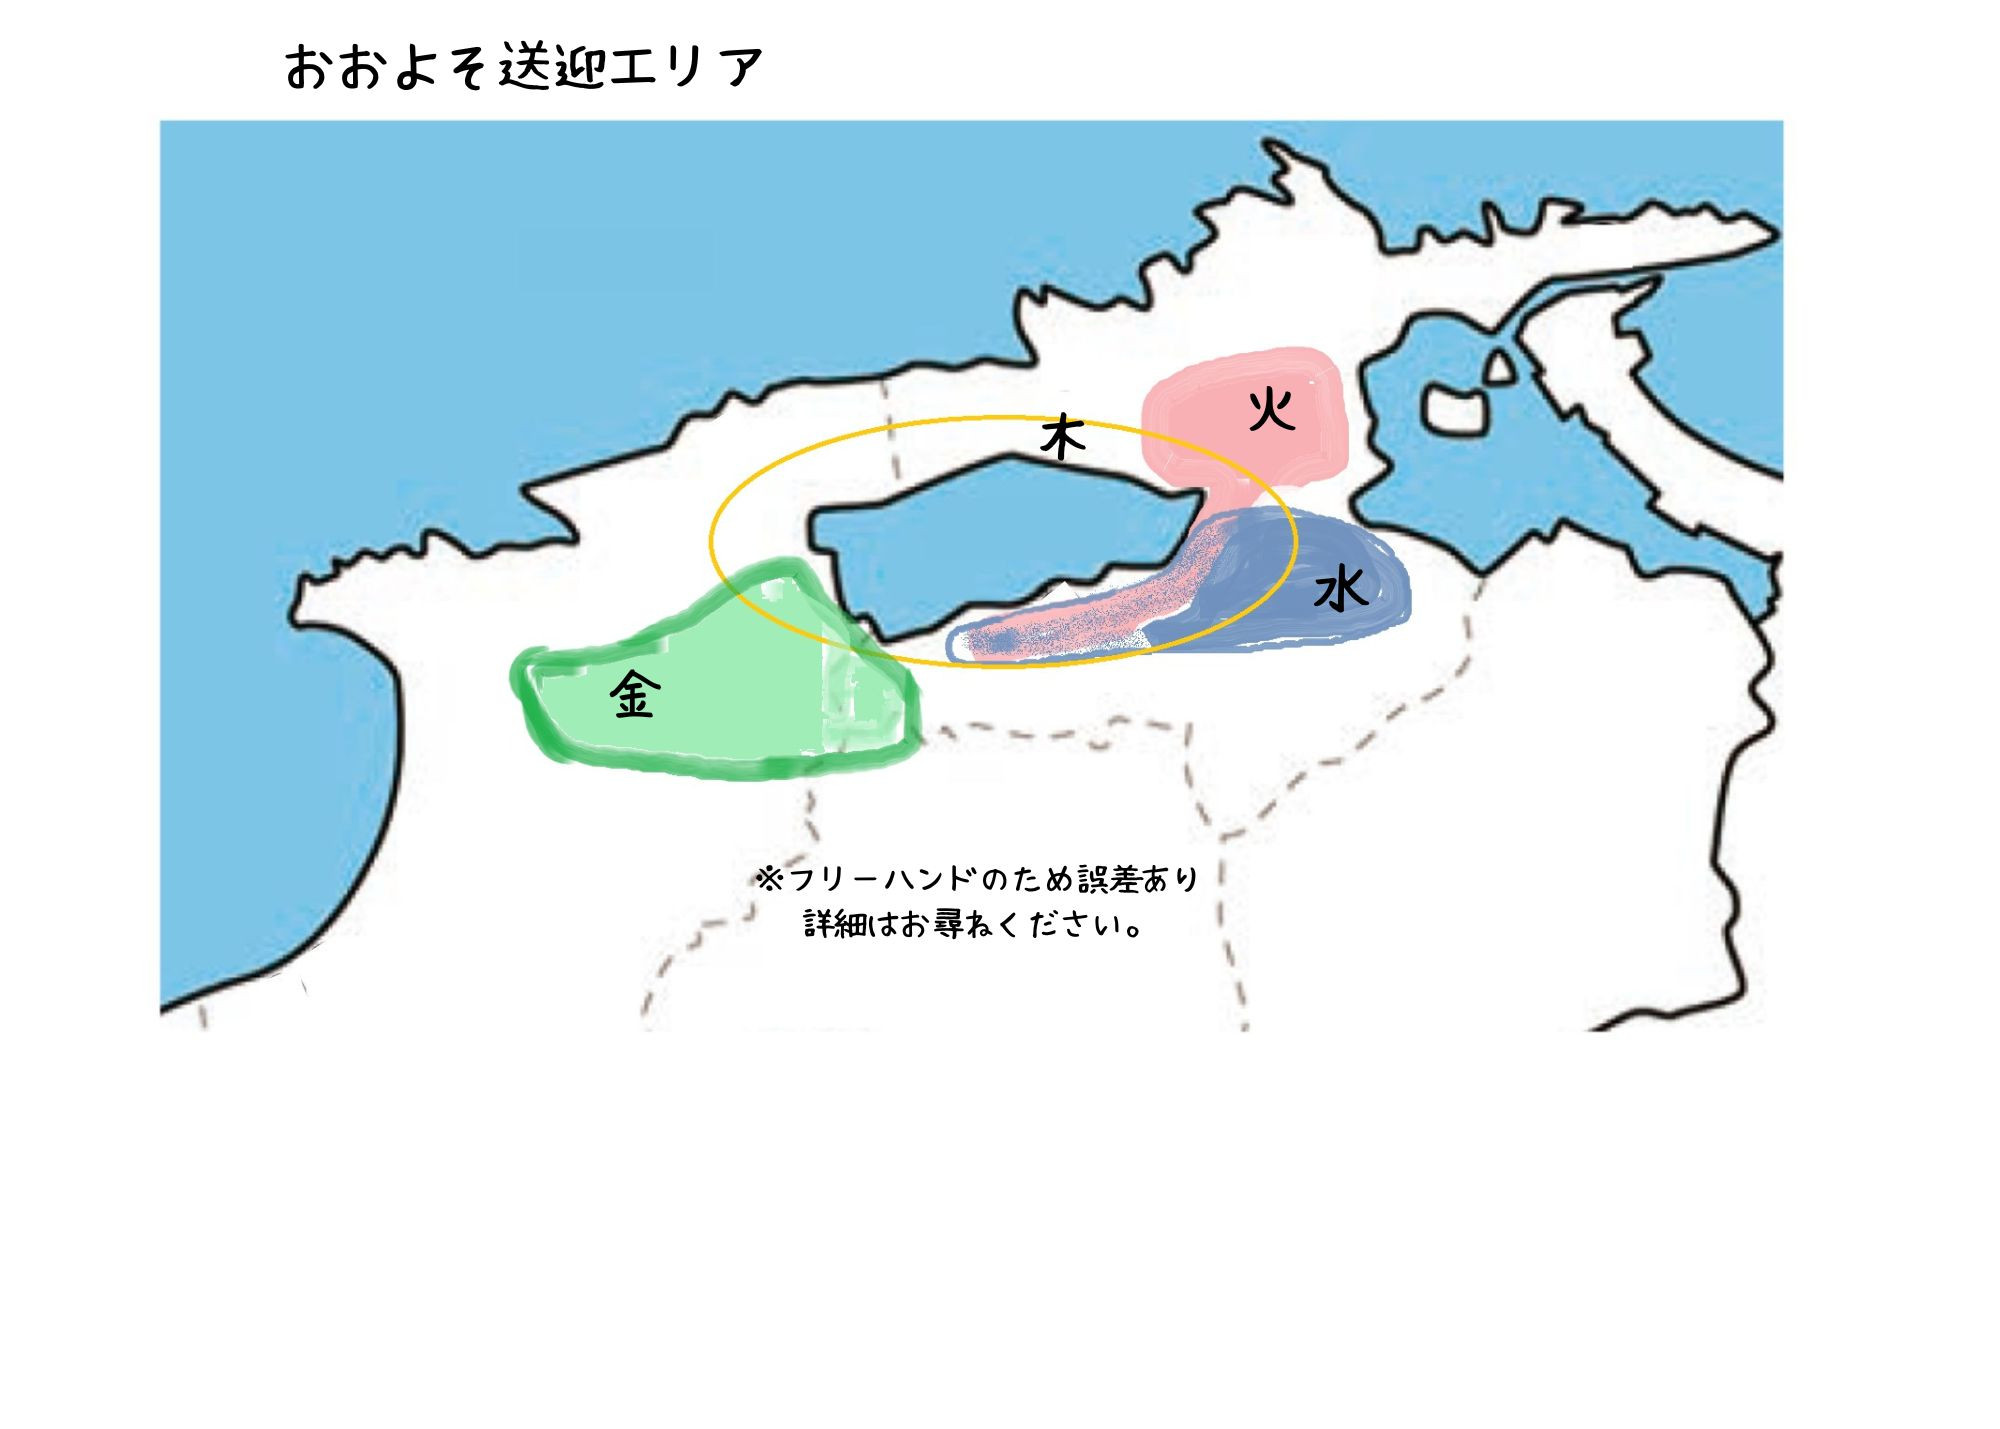 松江出雲地図 (1).jpg